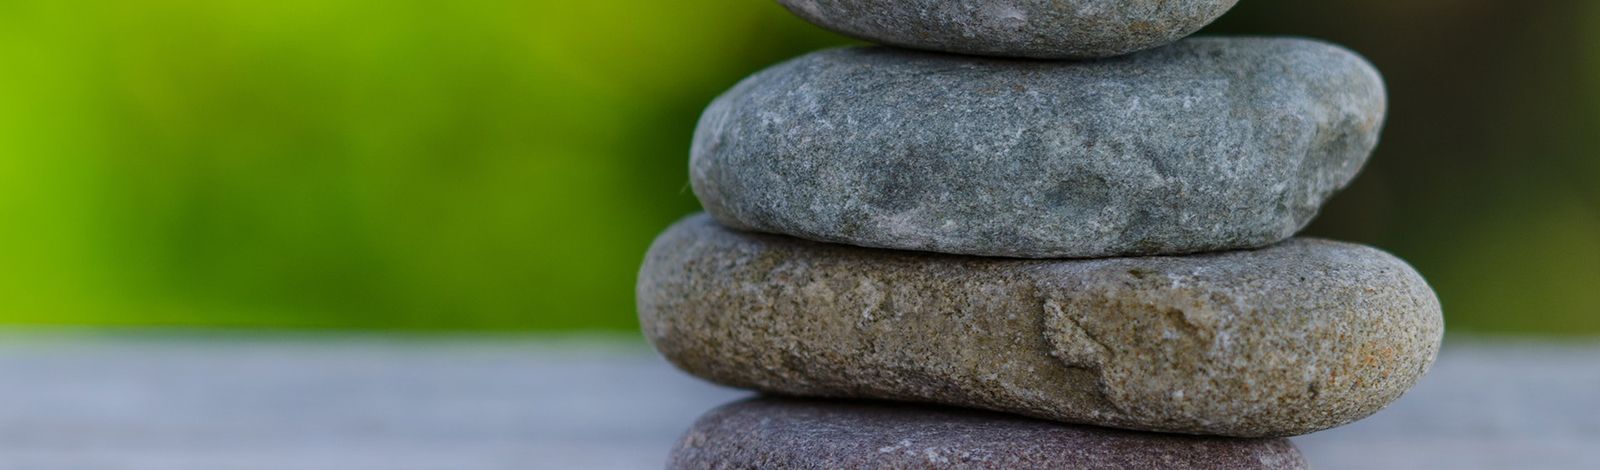 Zen stacked stones